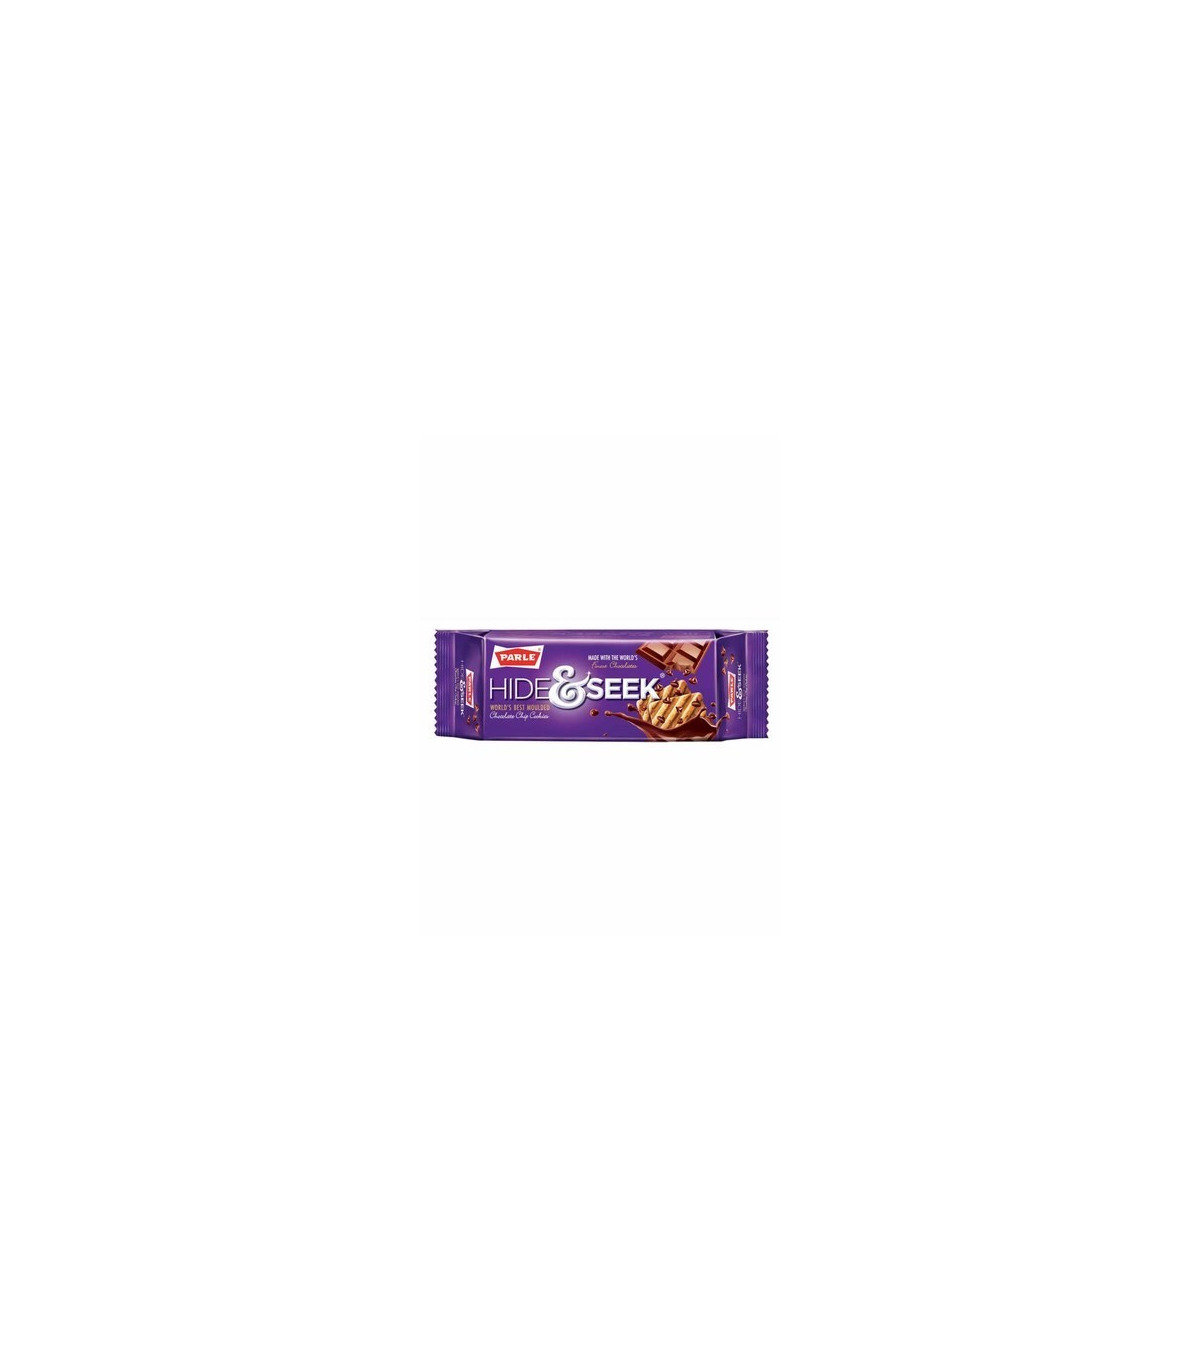 Buy Parle Hide Seek Chocolate Fab Online Get Grocery Com Germany